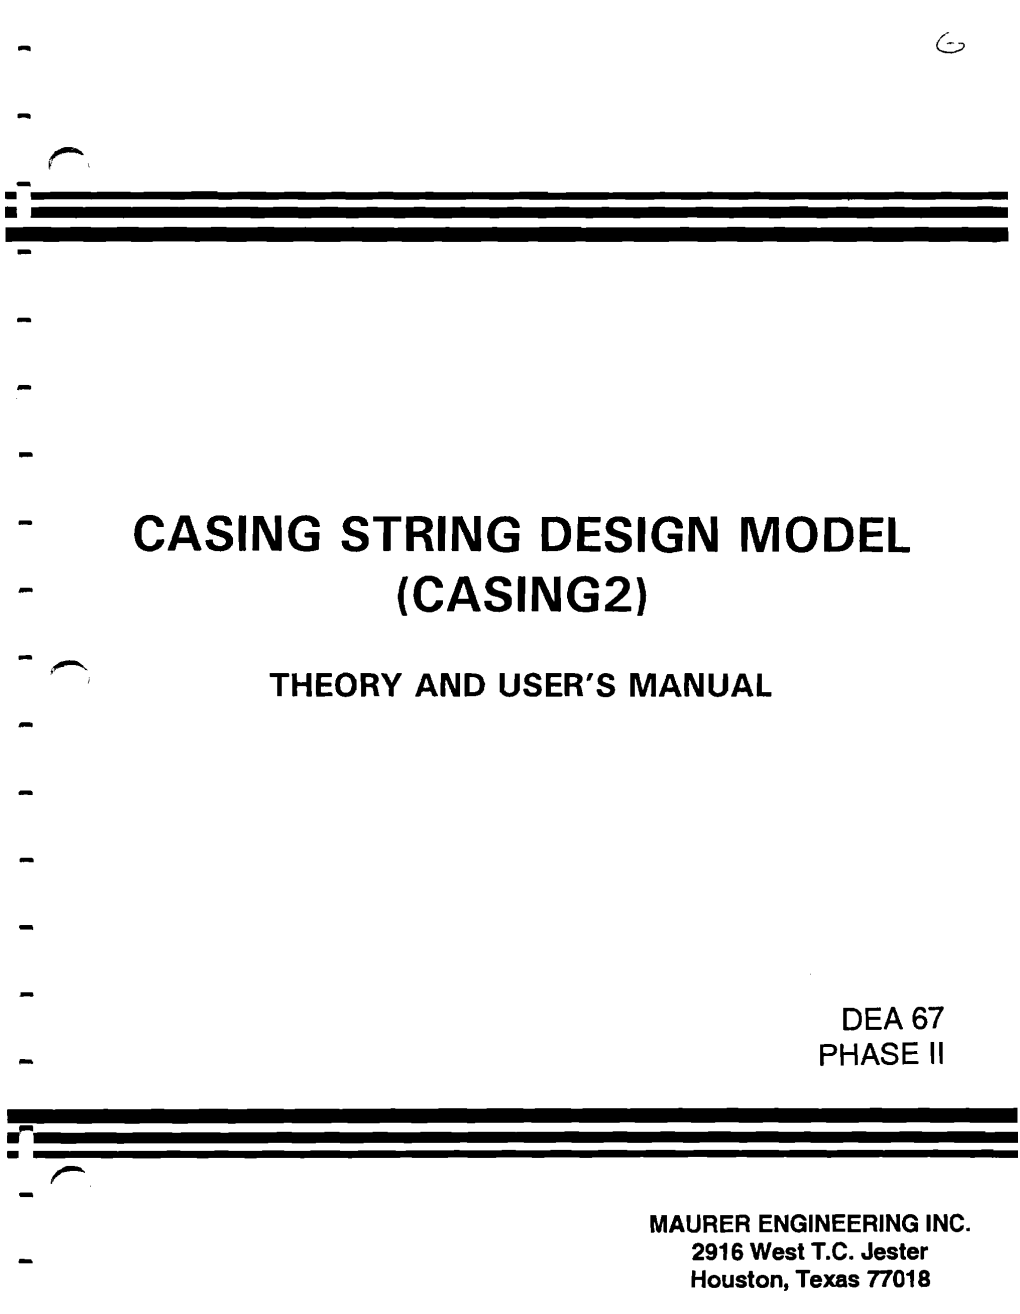 Casing String Desing Model 9 (Casing2)